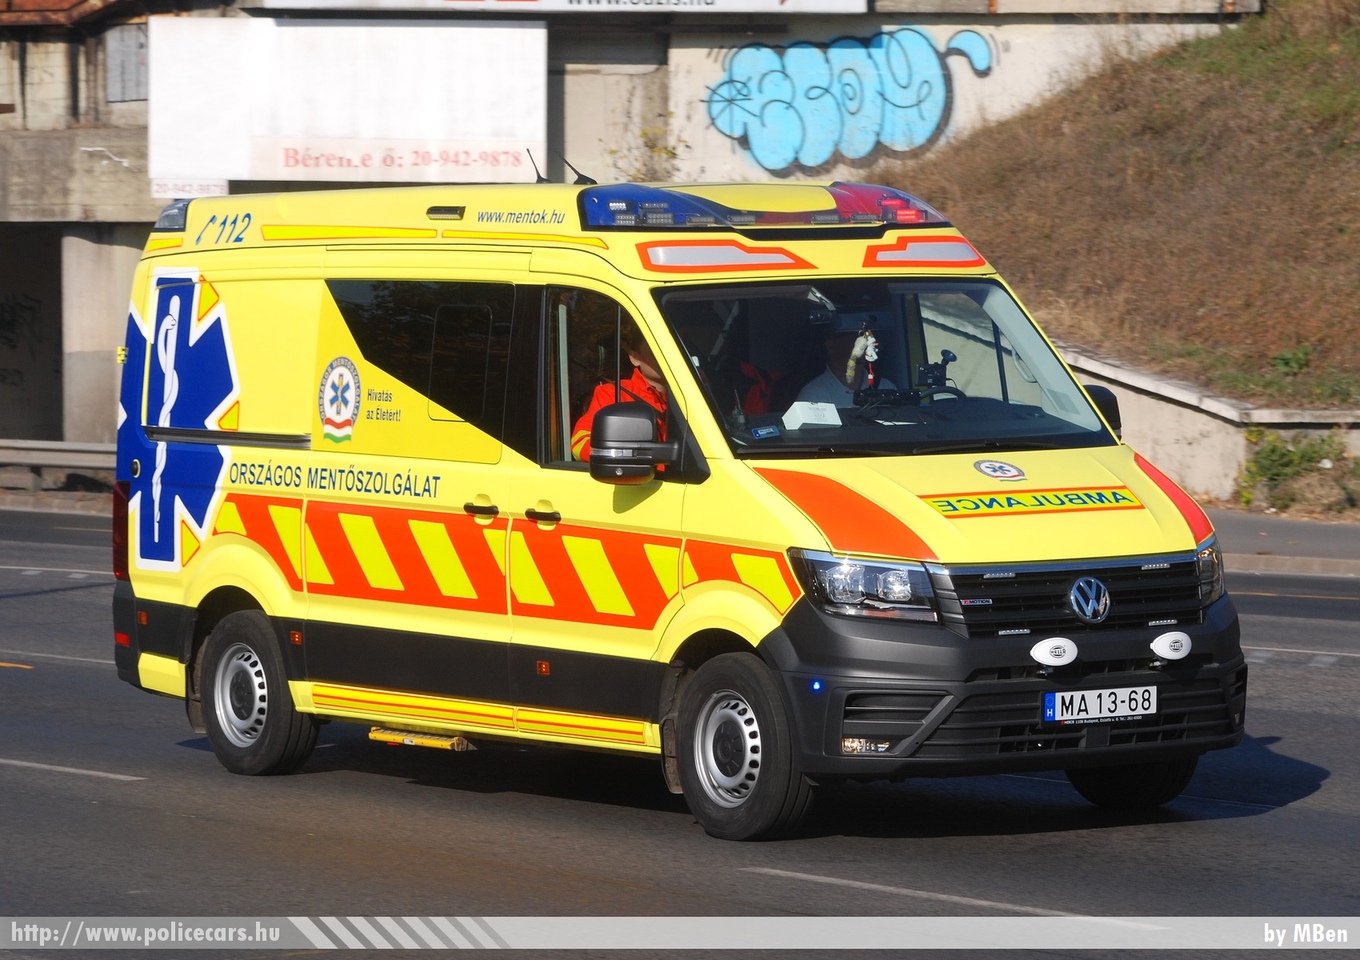 Volkswagen Crafter II Profile, Országos Mentõszolgálat, fotó: MBen
Keywords: magyar Magyarország mentő mentőautó OMSZ Hungary hungarian ambulance MA13-68